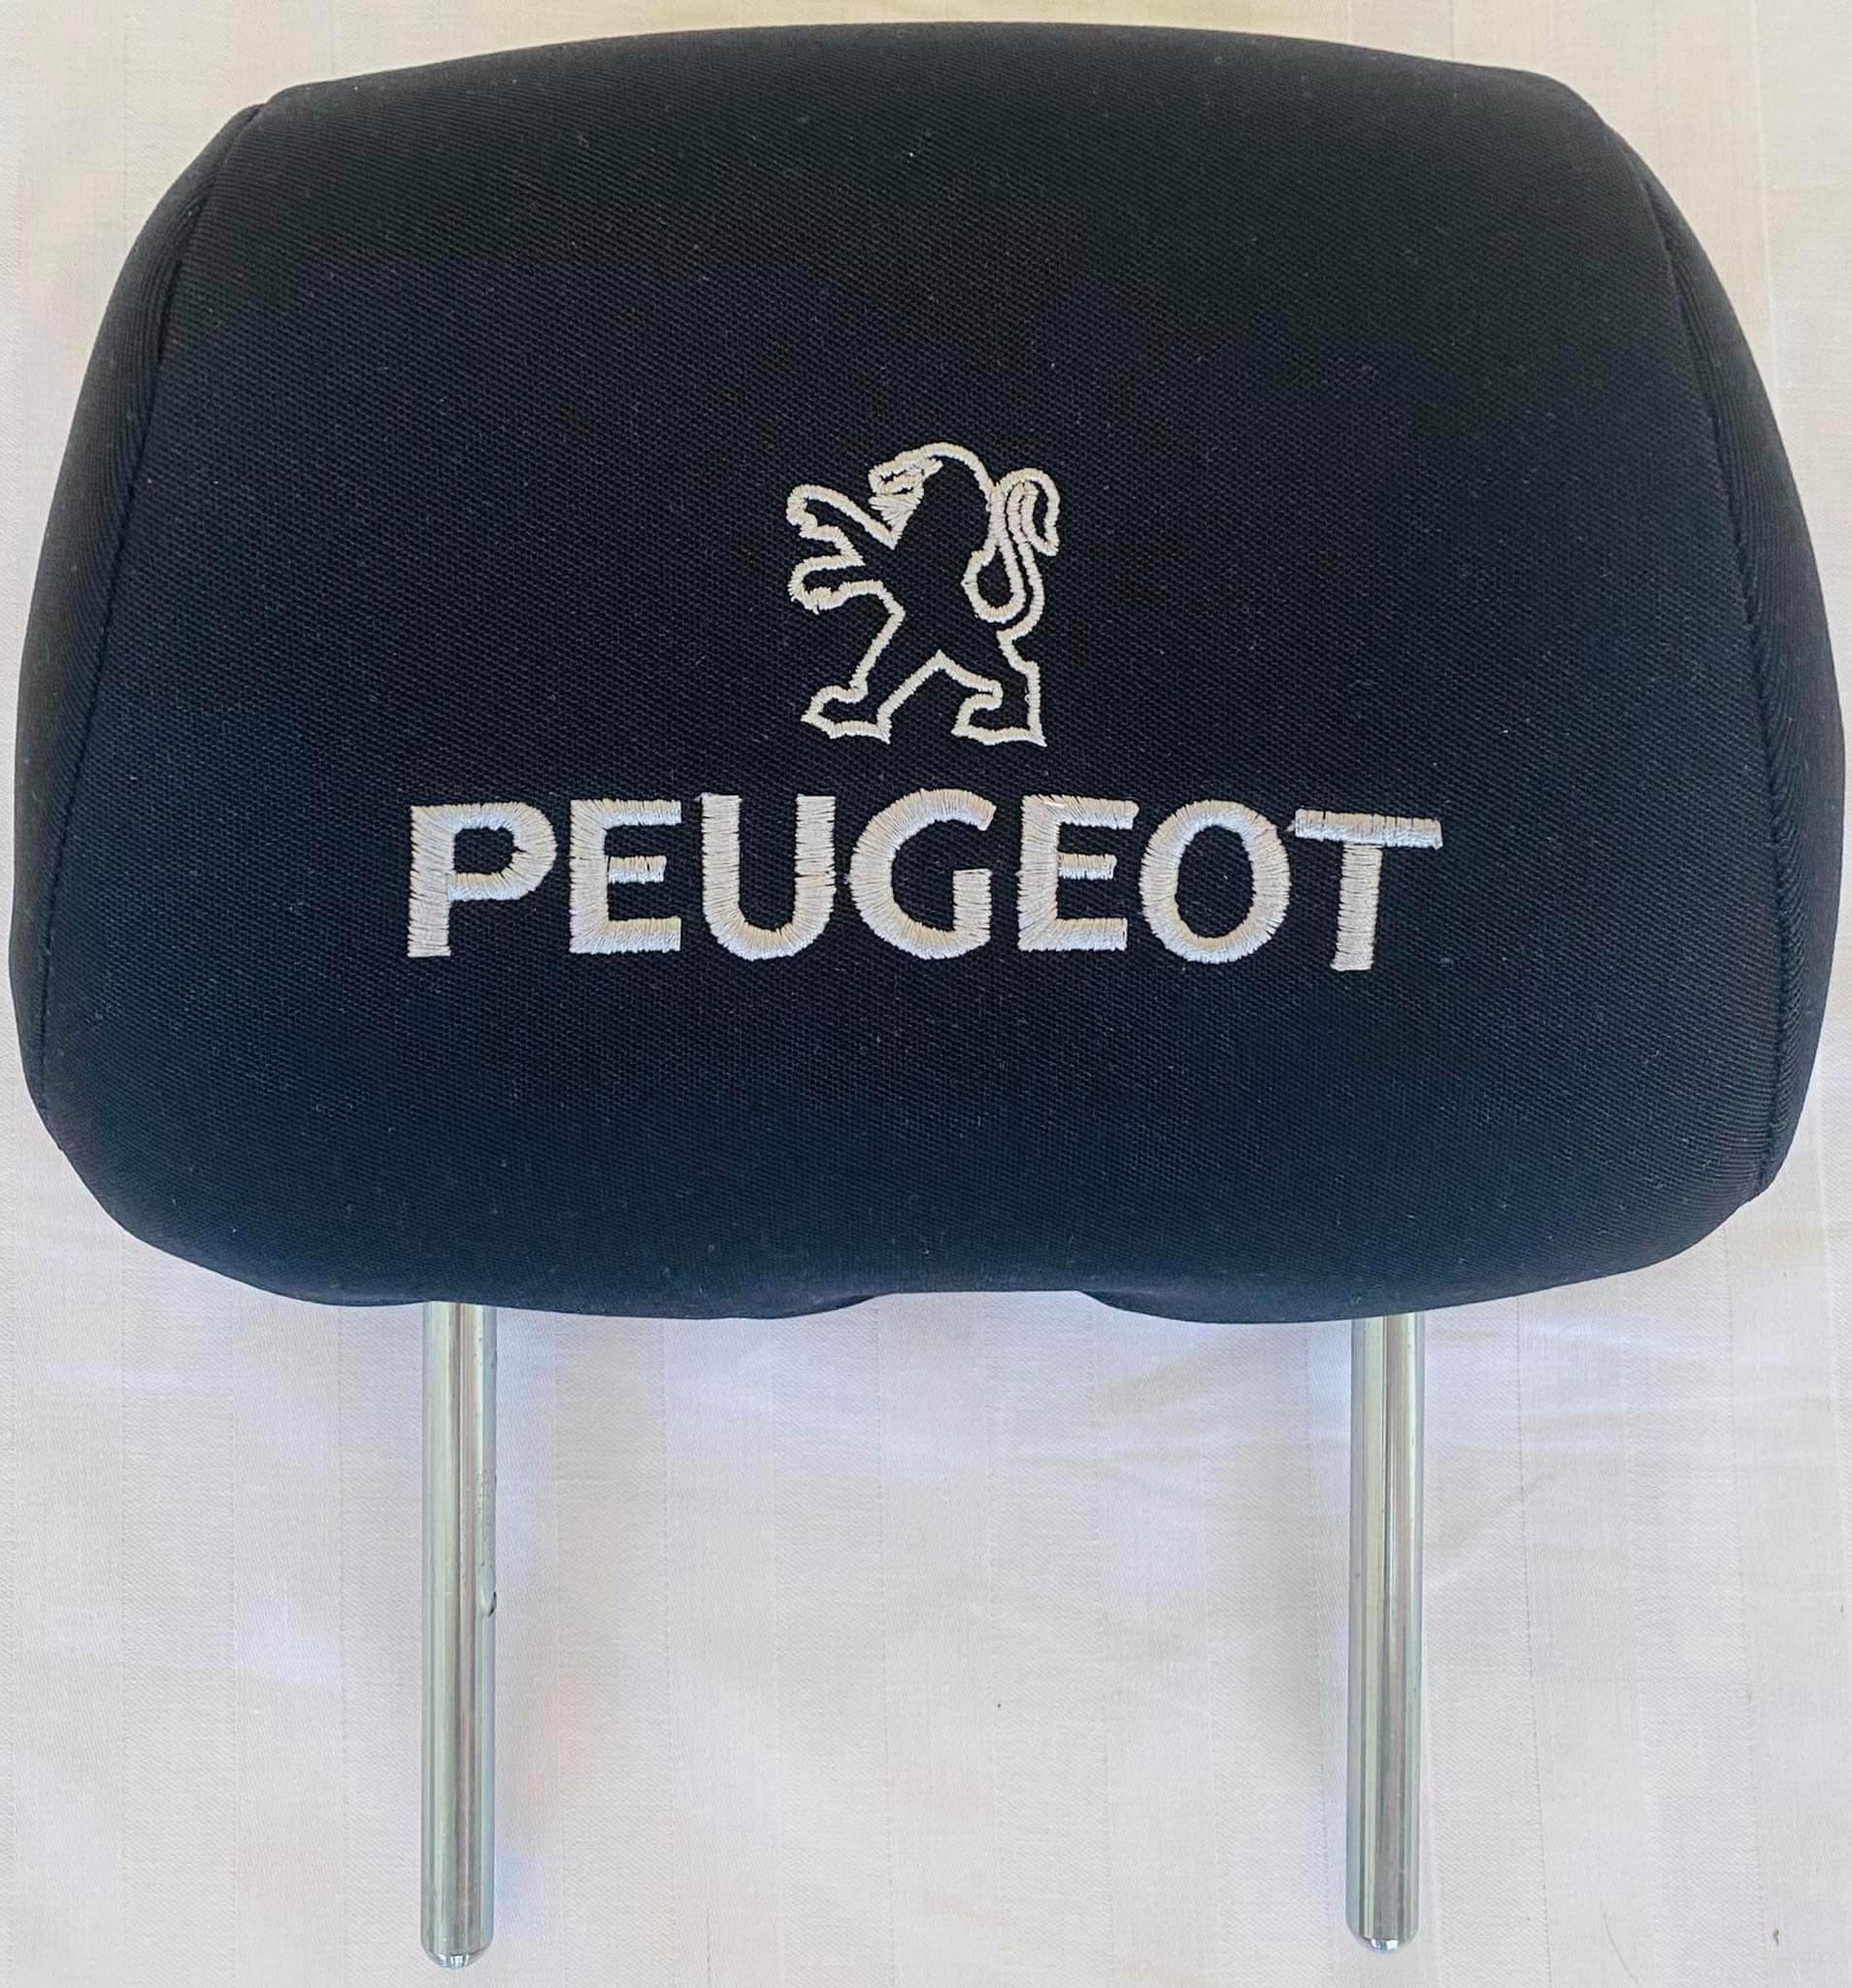 Čierne návleky na opierky hlavy s logom Peugeot - 2ks